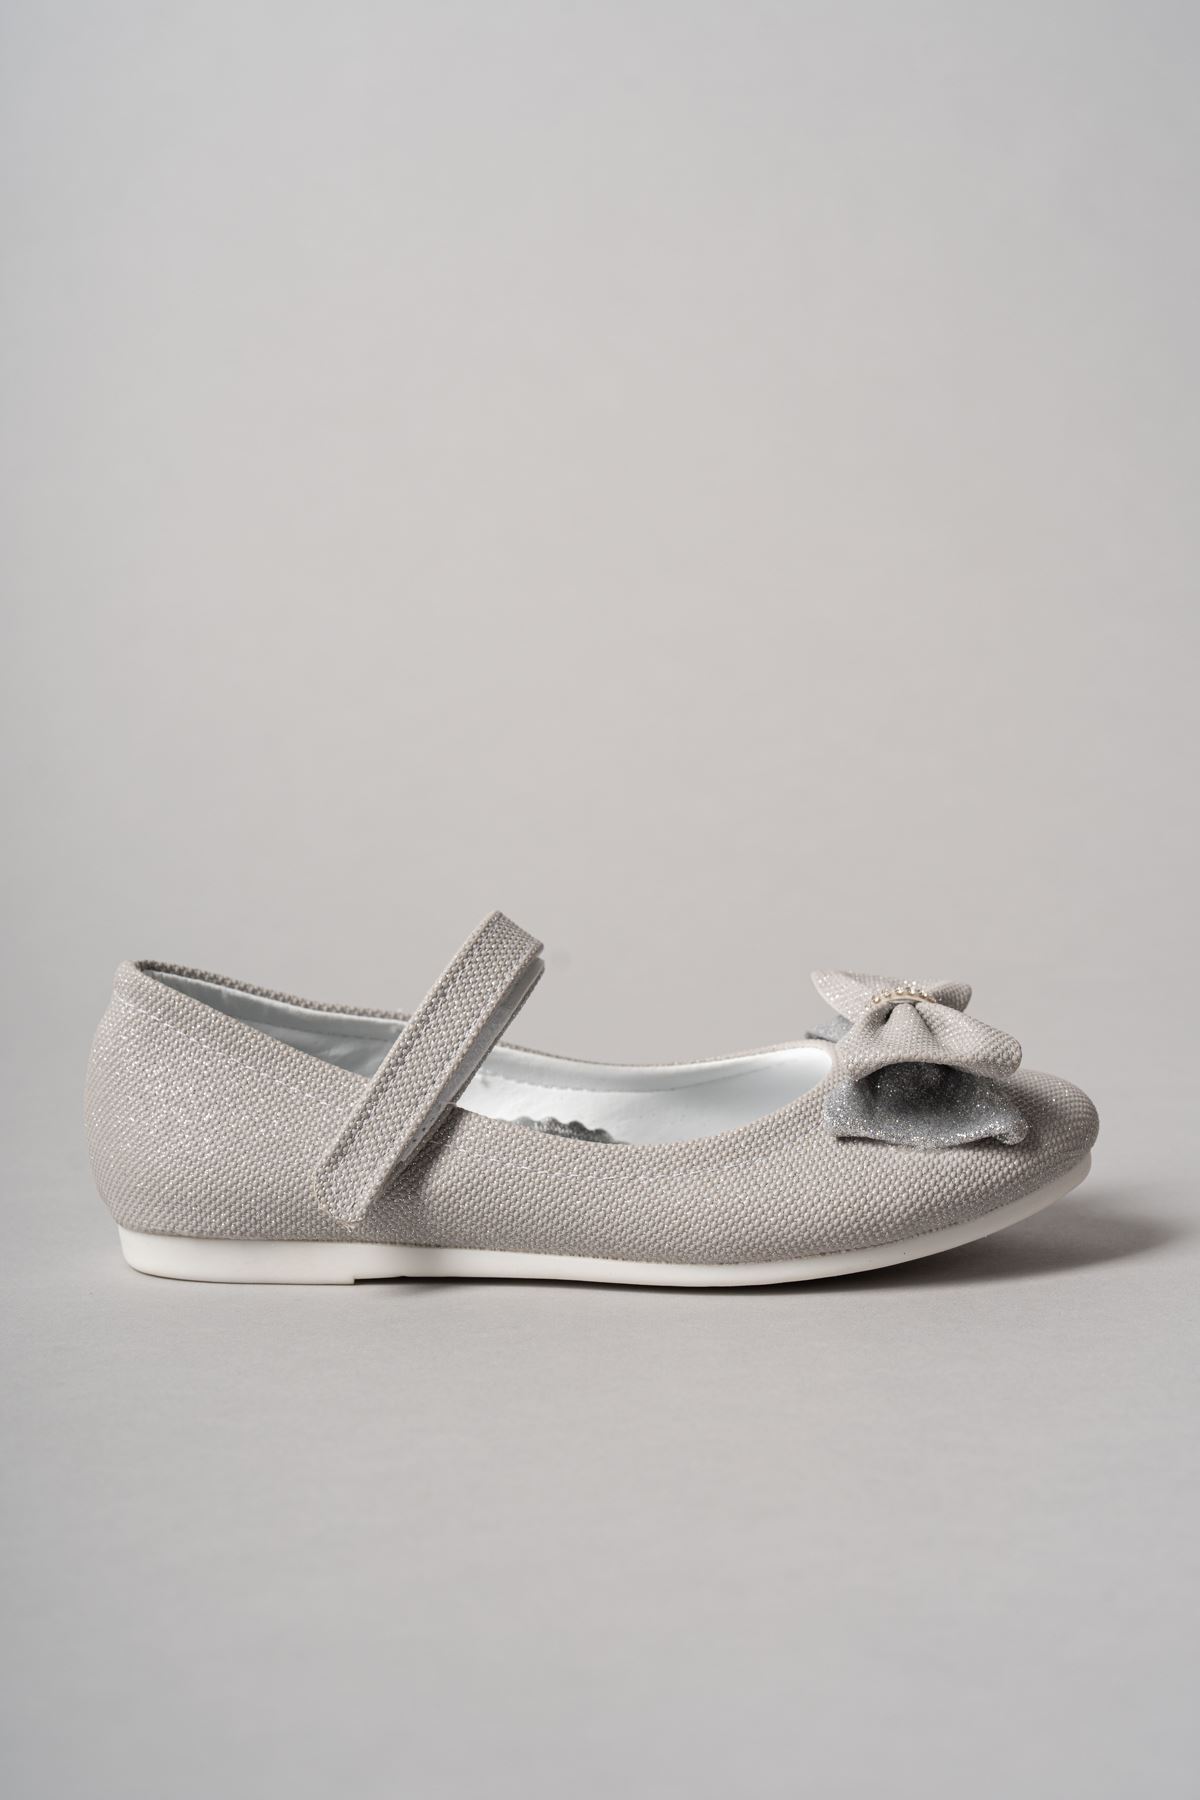 Boğma Fiyonk Gümüş Star Kız Çocuk Ayakkabı